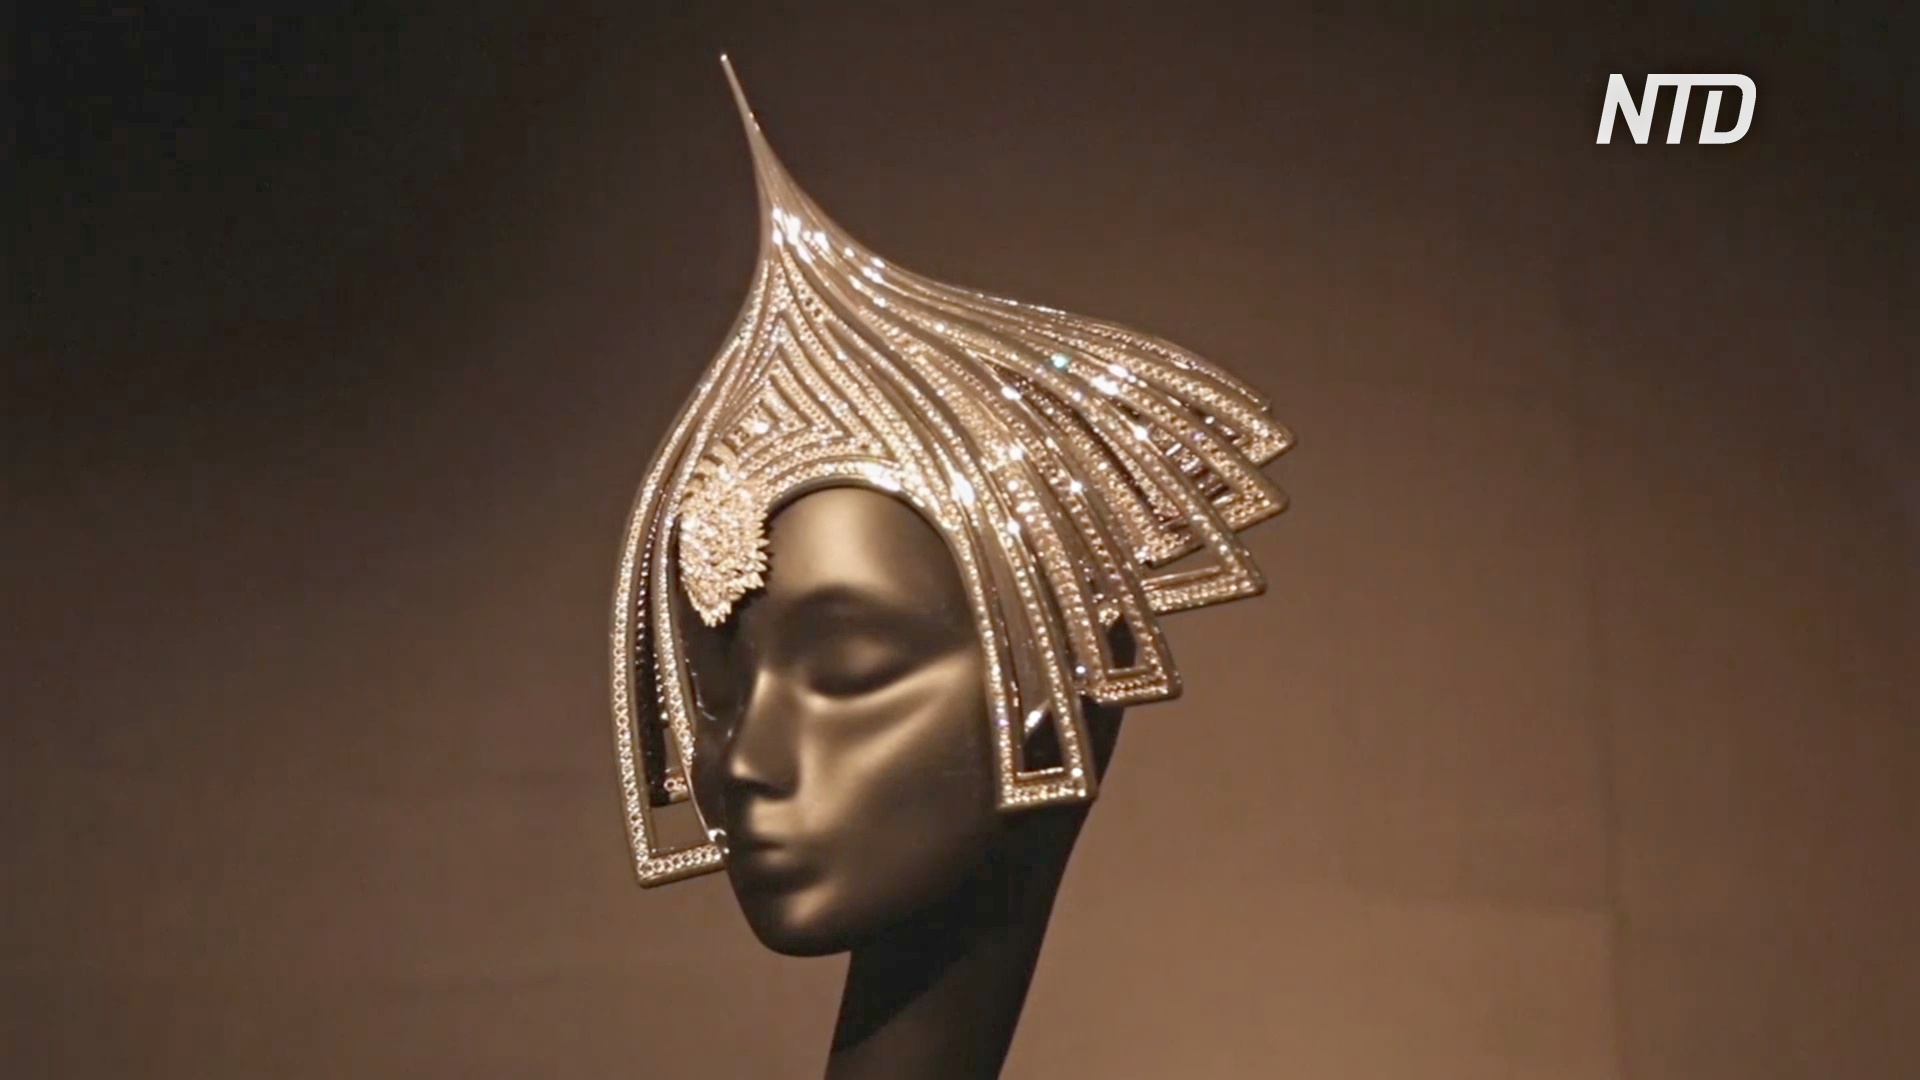 Котелок в стразах и шляпа с парусником: творения Филипа Трейси на выставке в Петербурге